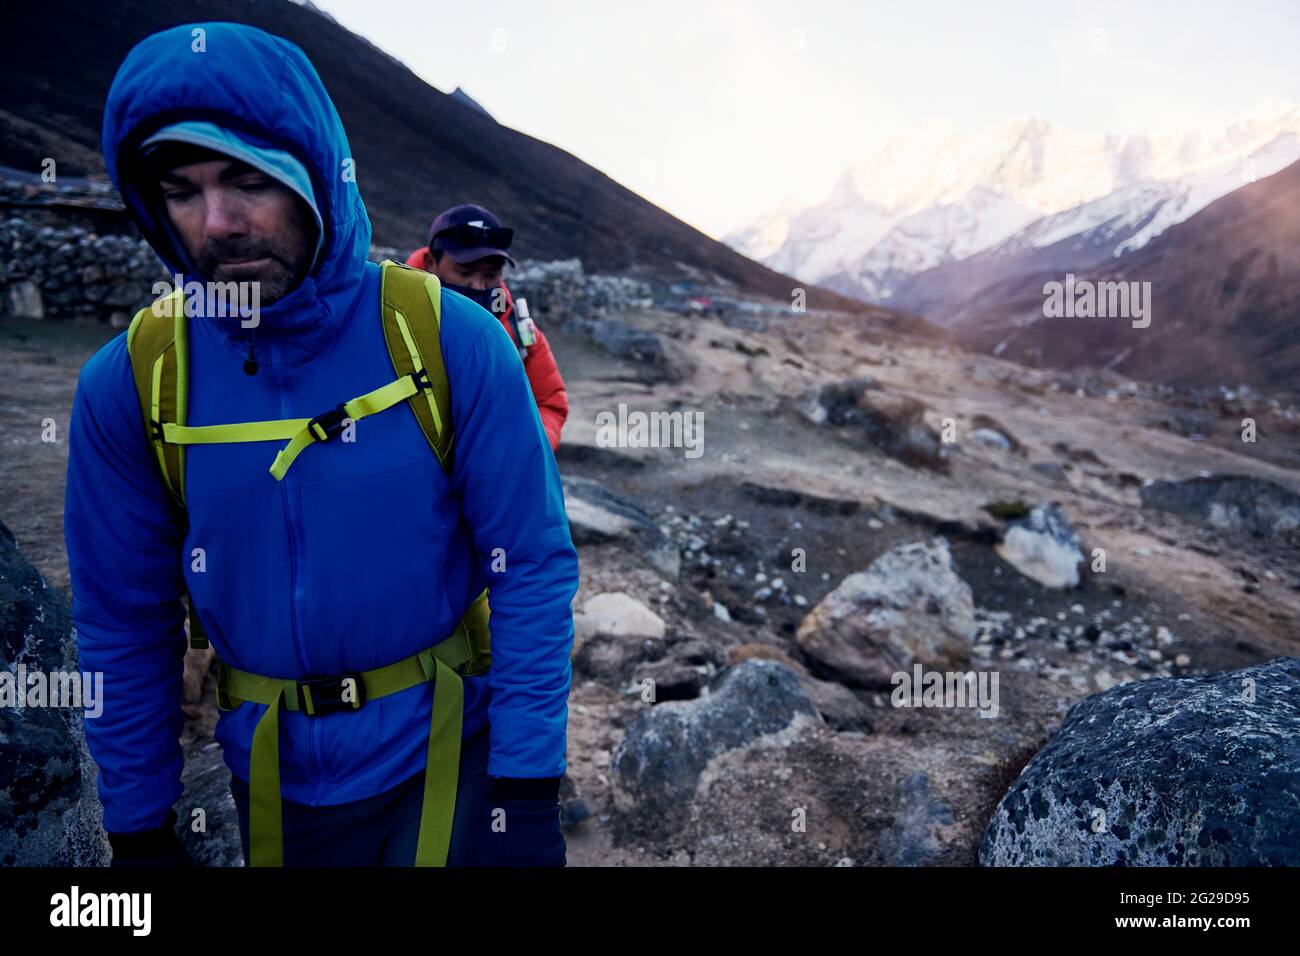 Trekkers on an early alpine start in Nepal Stock Photo